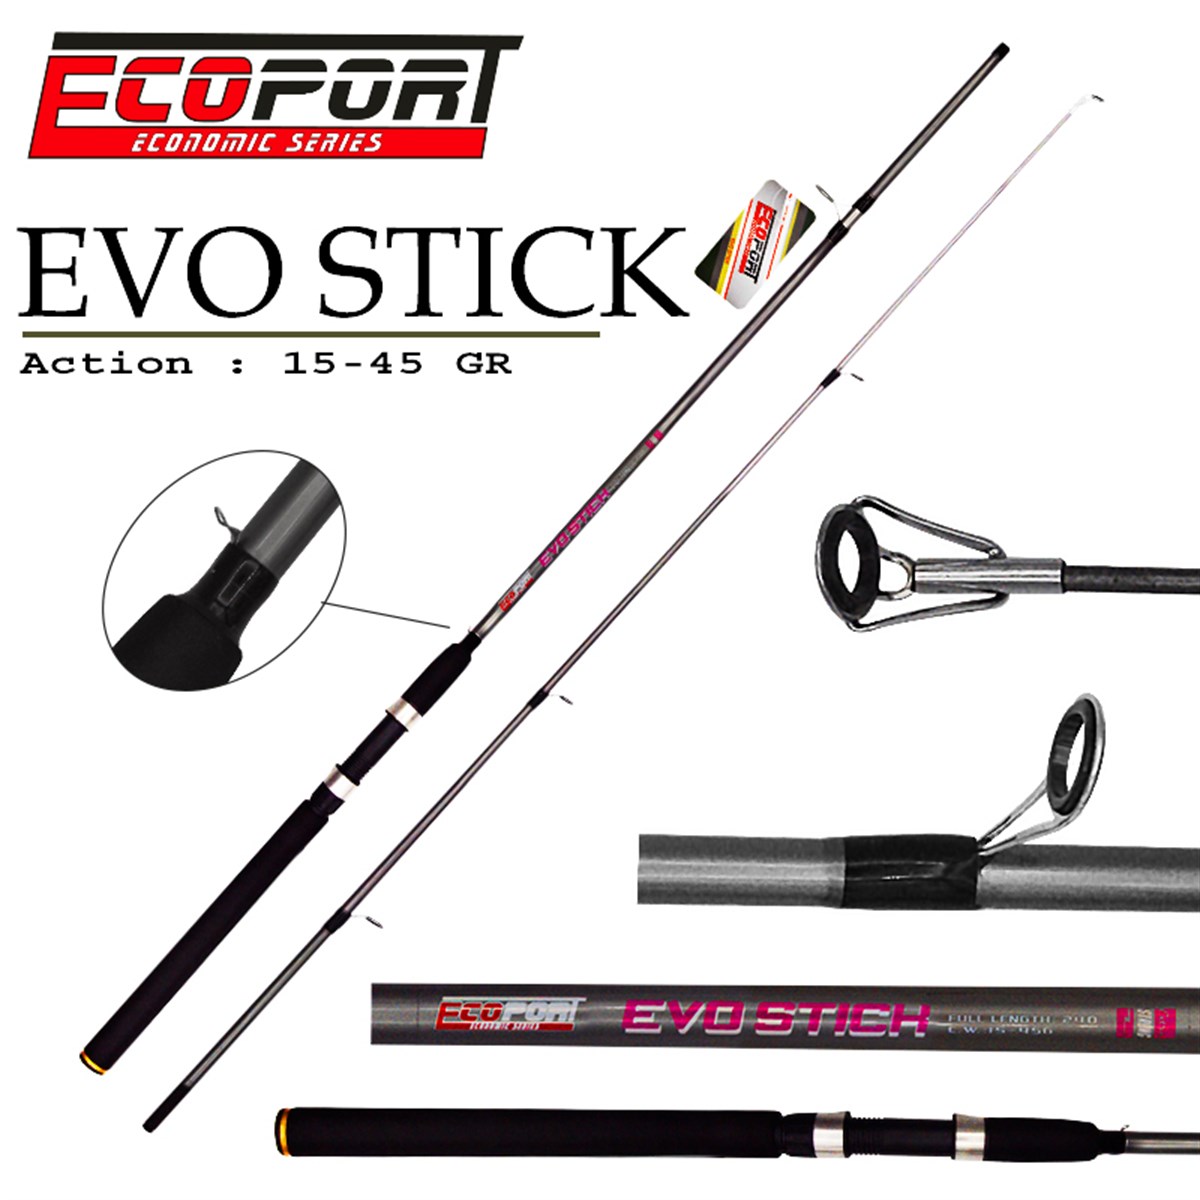 Ecoport Evo Stick 270 cm Spin Kamış 15 - 45 gr